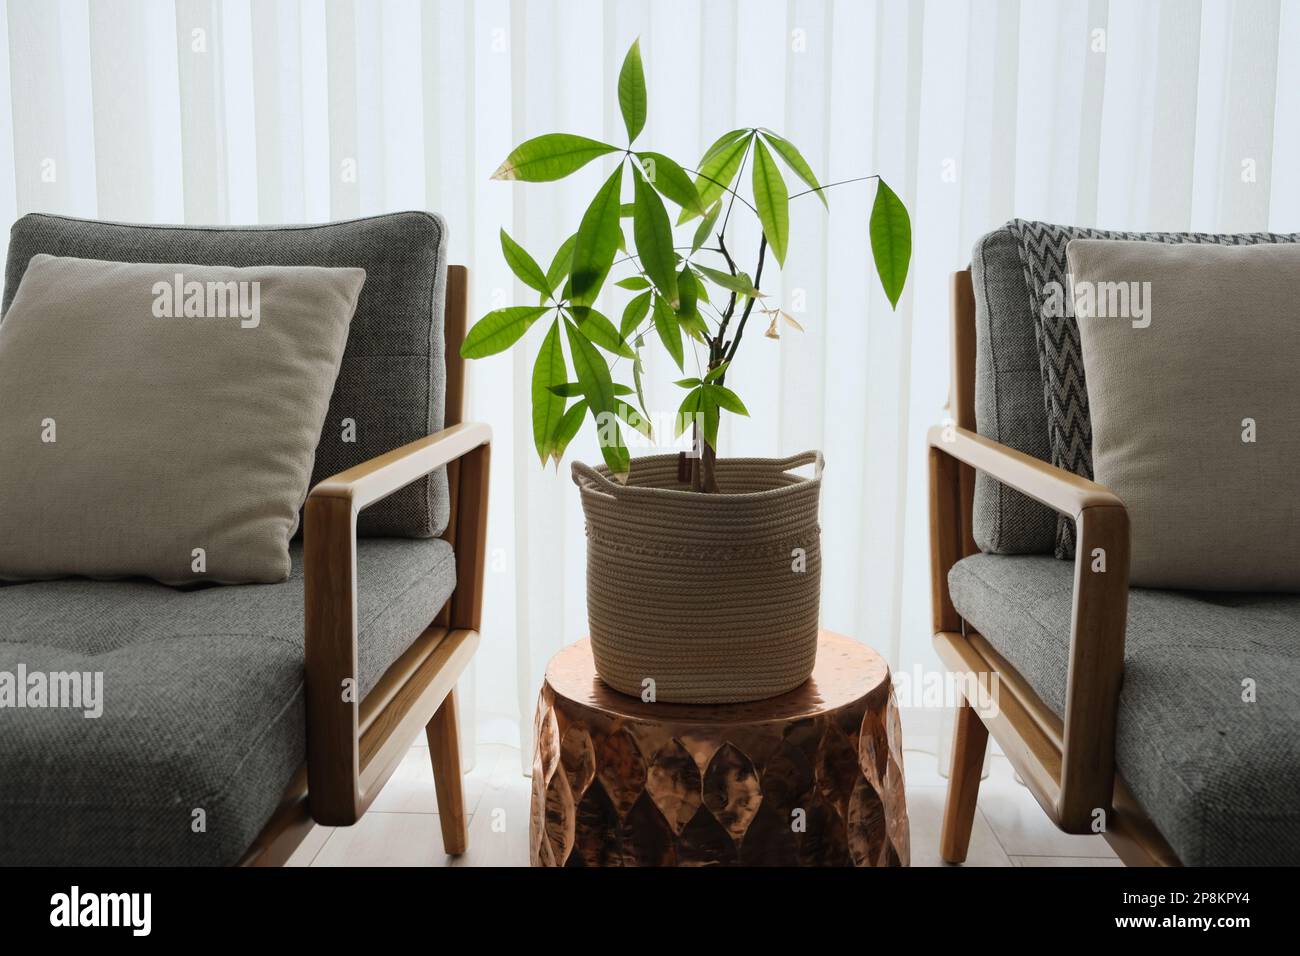 Die Geldbaumpflanze ist auf dem Beistelltisch und zwischen den beiden Sesseln. Pachira ist vor dem Fenster im Haus. Stockfoto